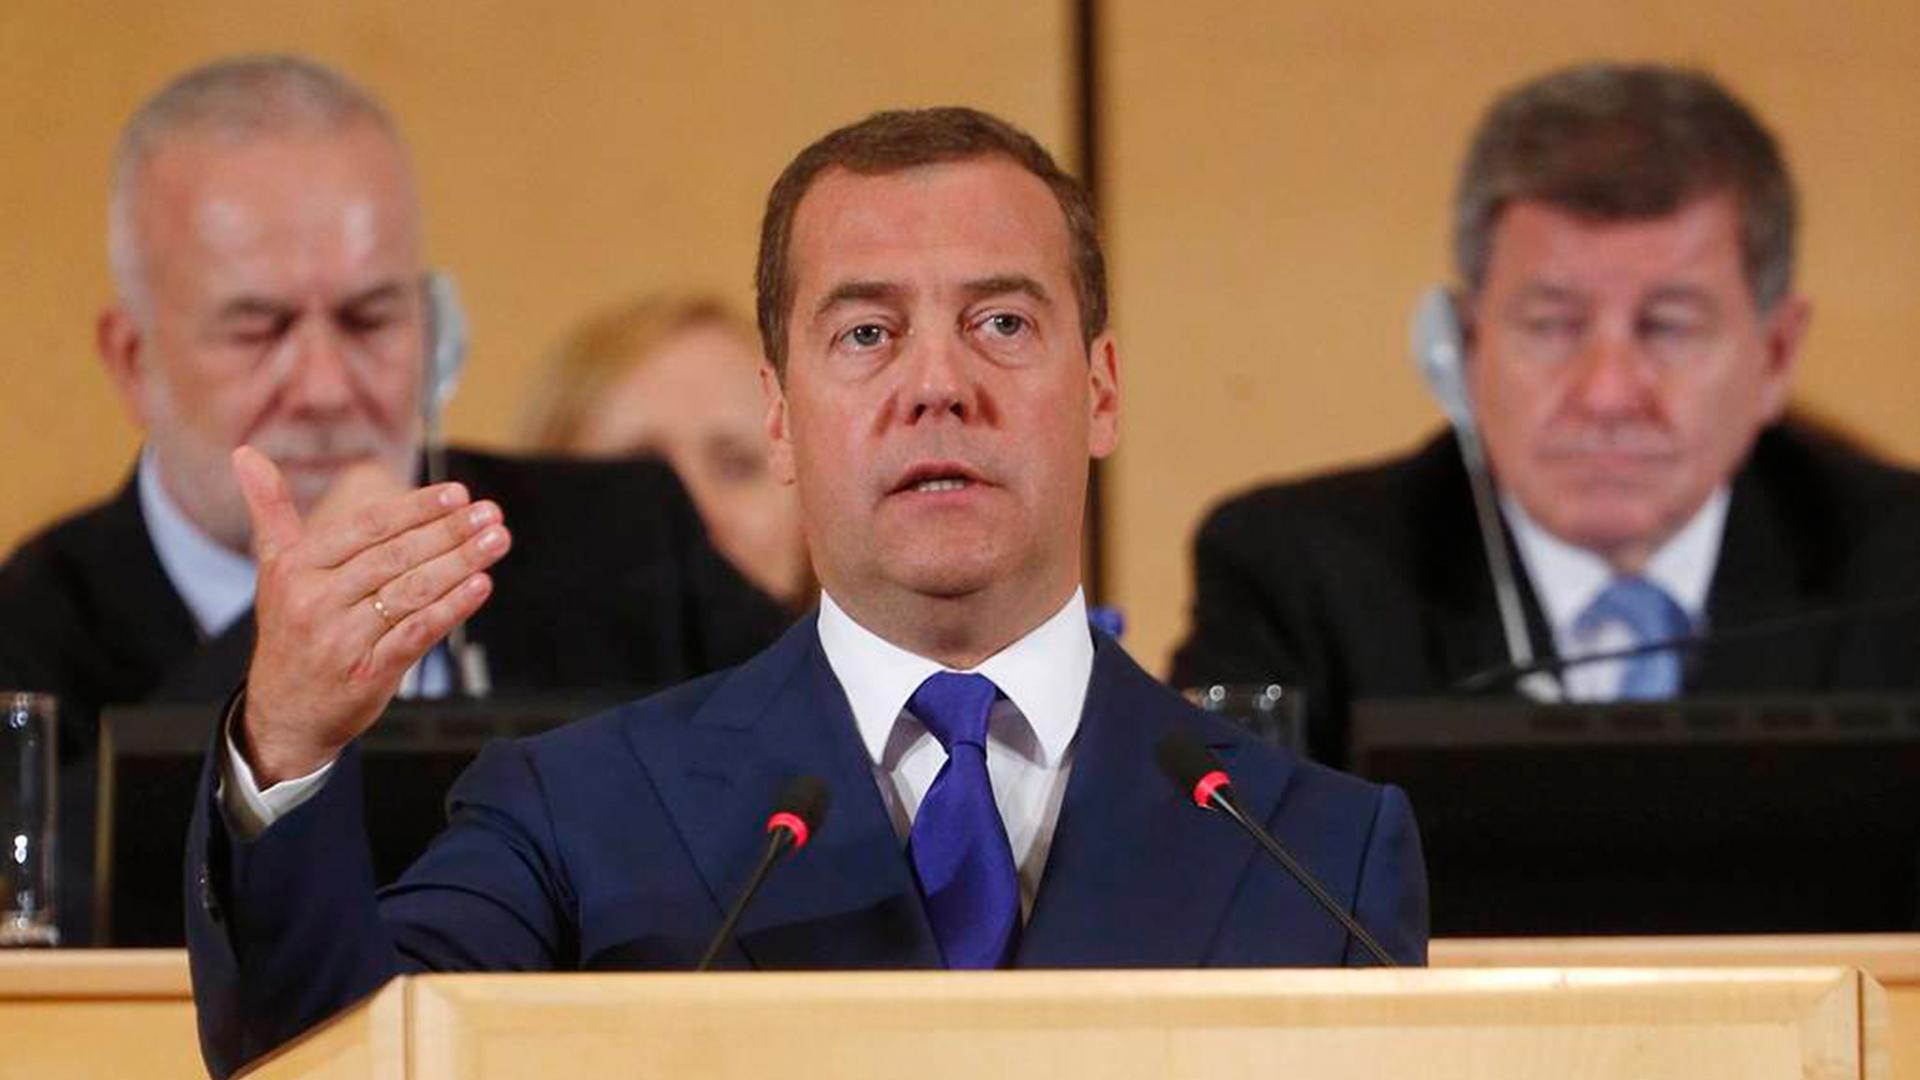 Правительство заботится о. Медведев в Женеве. Медведев 4 дневная рабочая неделя. Медведев предложил четырехдневную рабочую неделю.